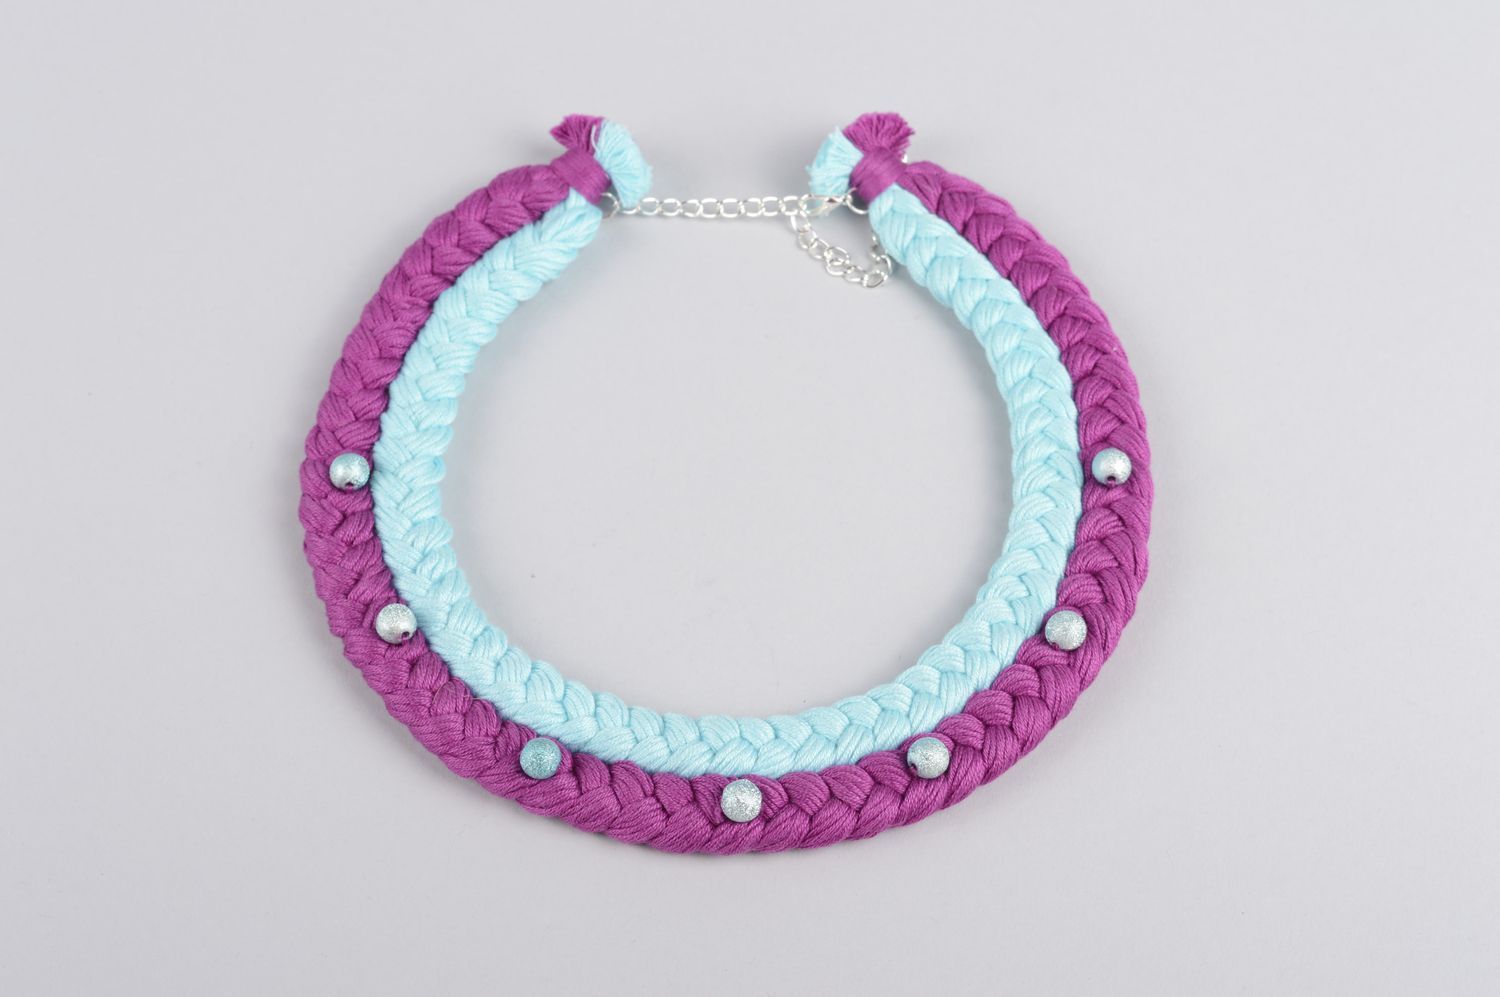 Collier textile Bijou fait main couleurs violette et bleu ciel Cadeau original photo 1